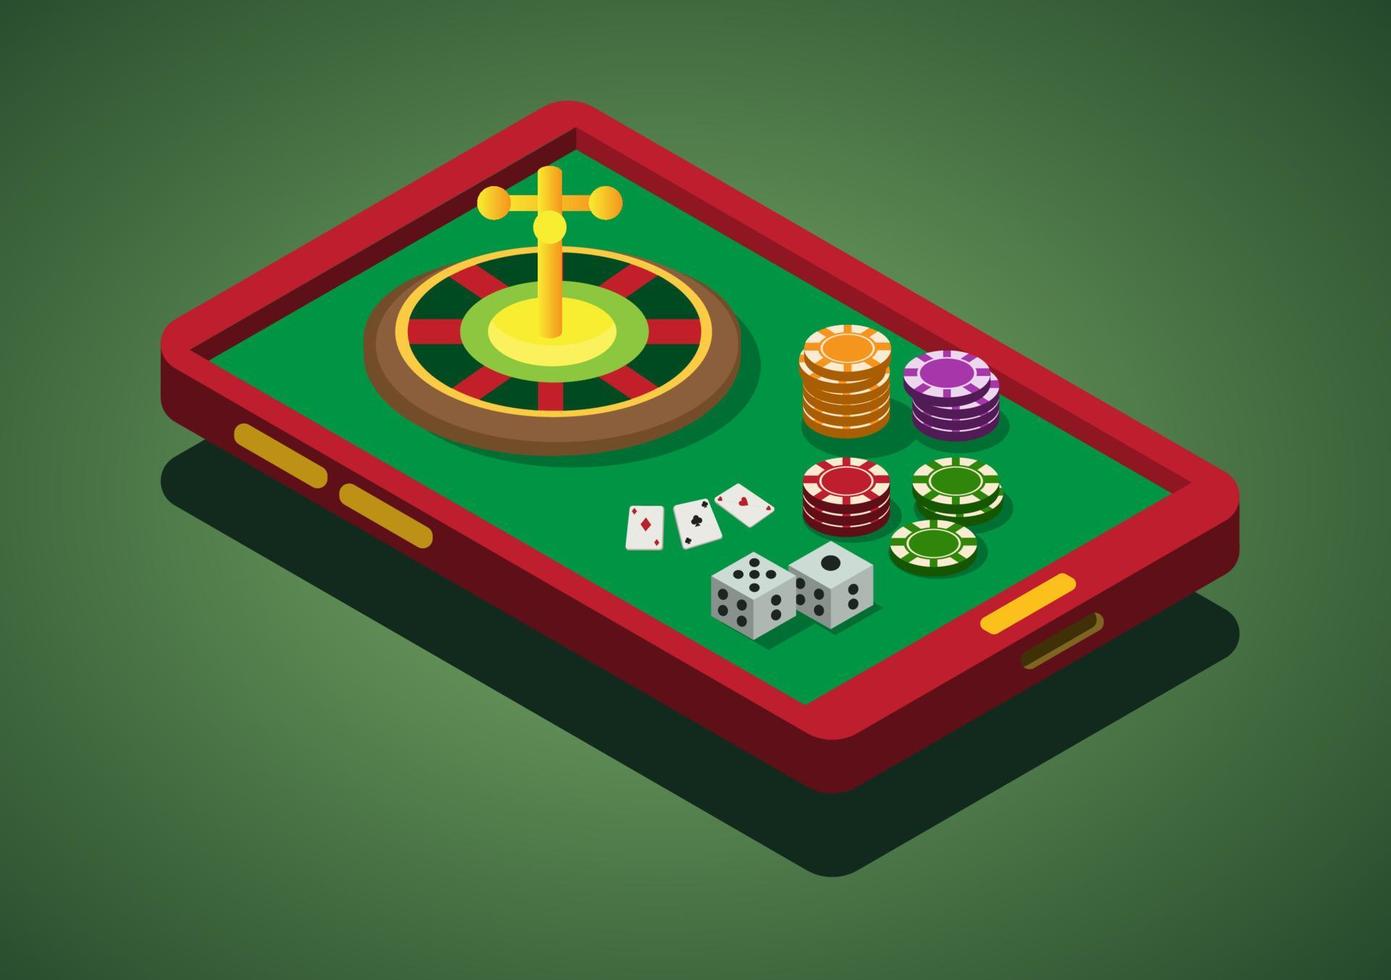 jogo de cassino on-line, smartphone, roleta, apostas, dominó, pôquer, fichas, dados, vetor de ilustração isométrica